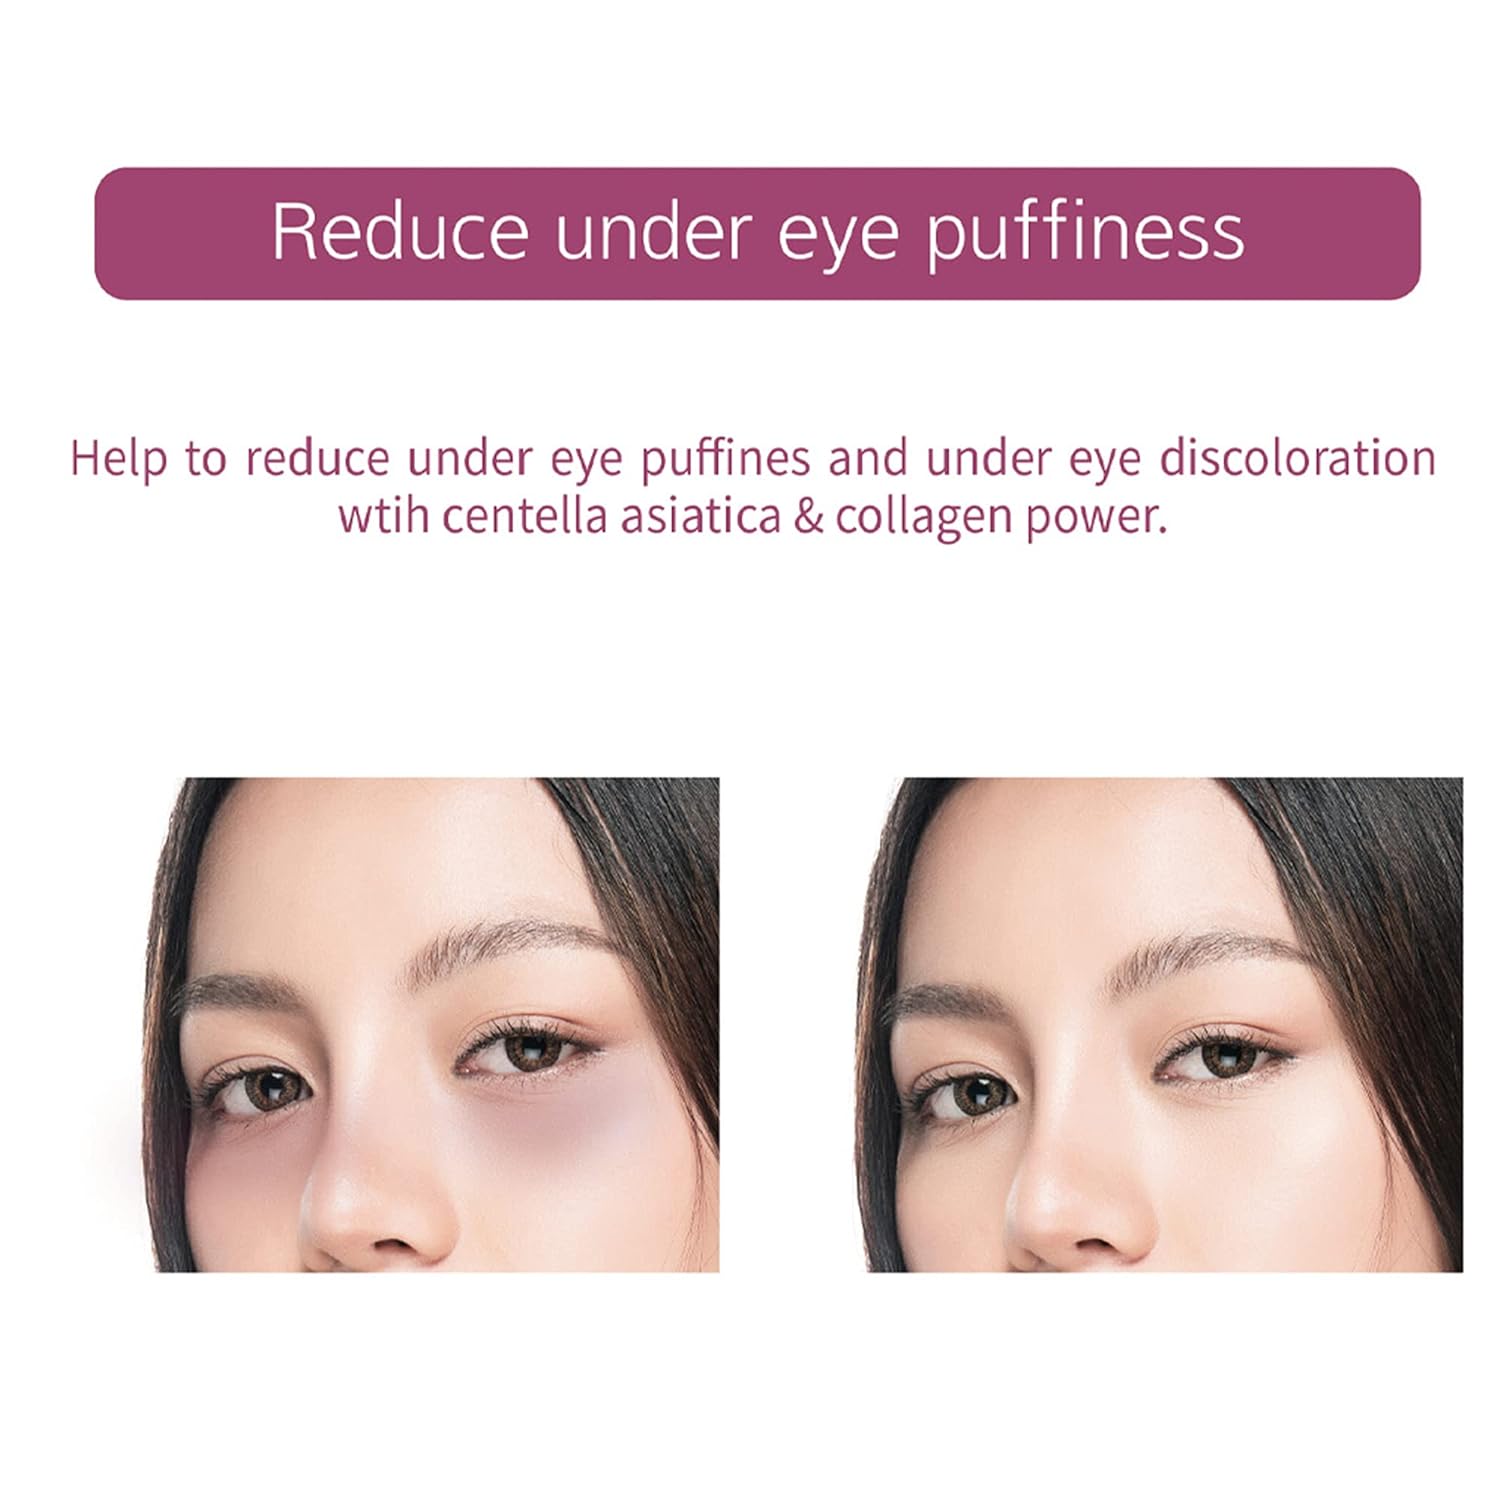 Veraclara Powerful Collagen Eyepatches